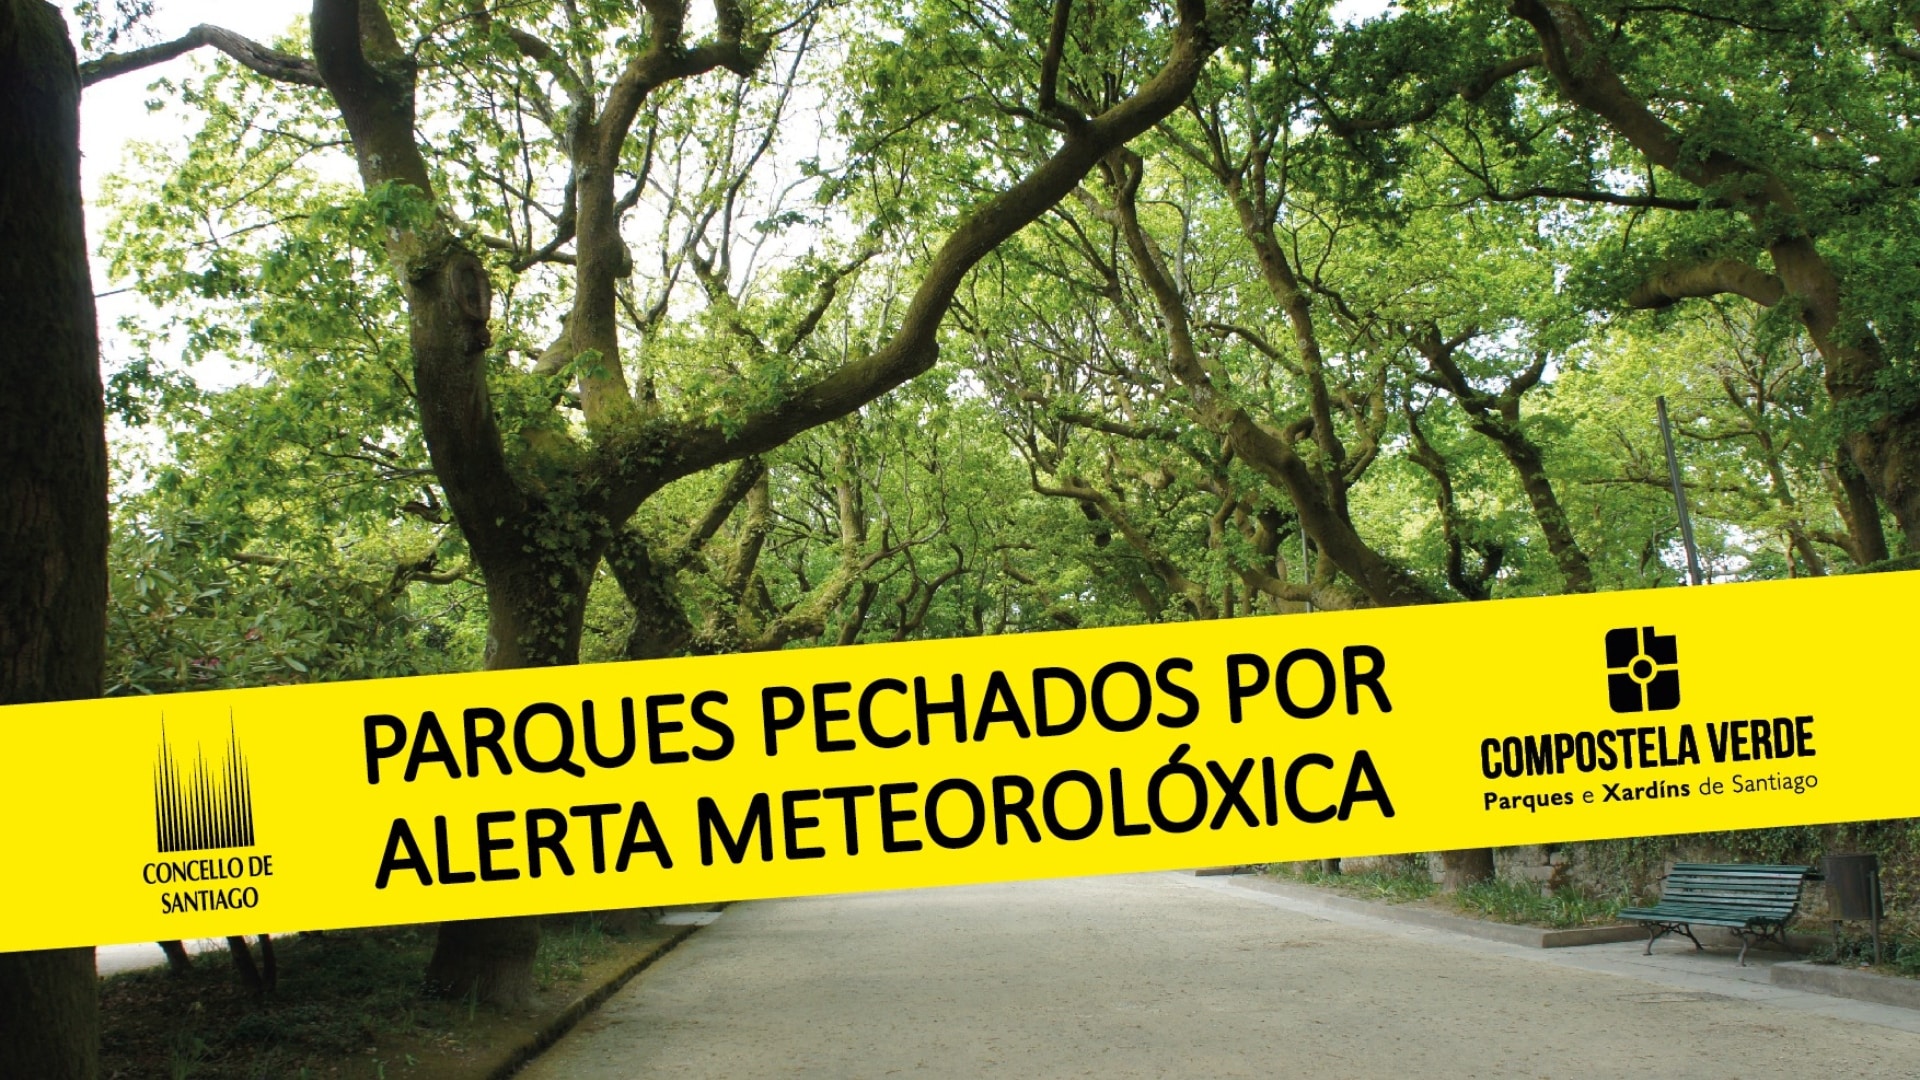 Parques cerrados en Santiago por los fuertes vientos | COCNELLO DE SANTIAGO